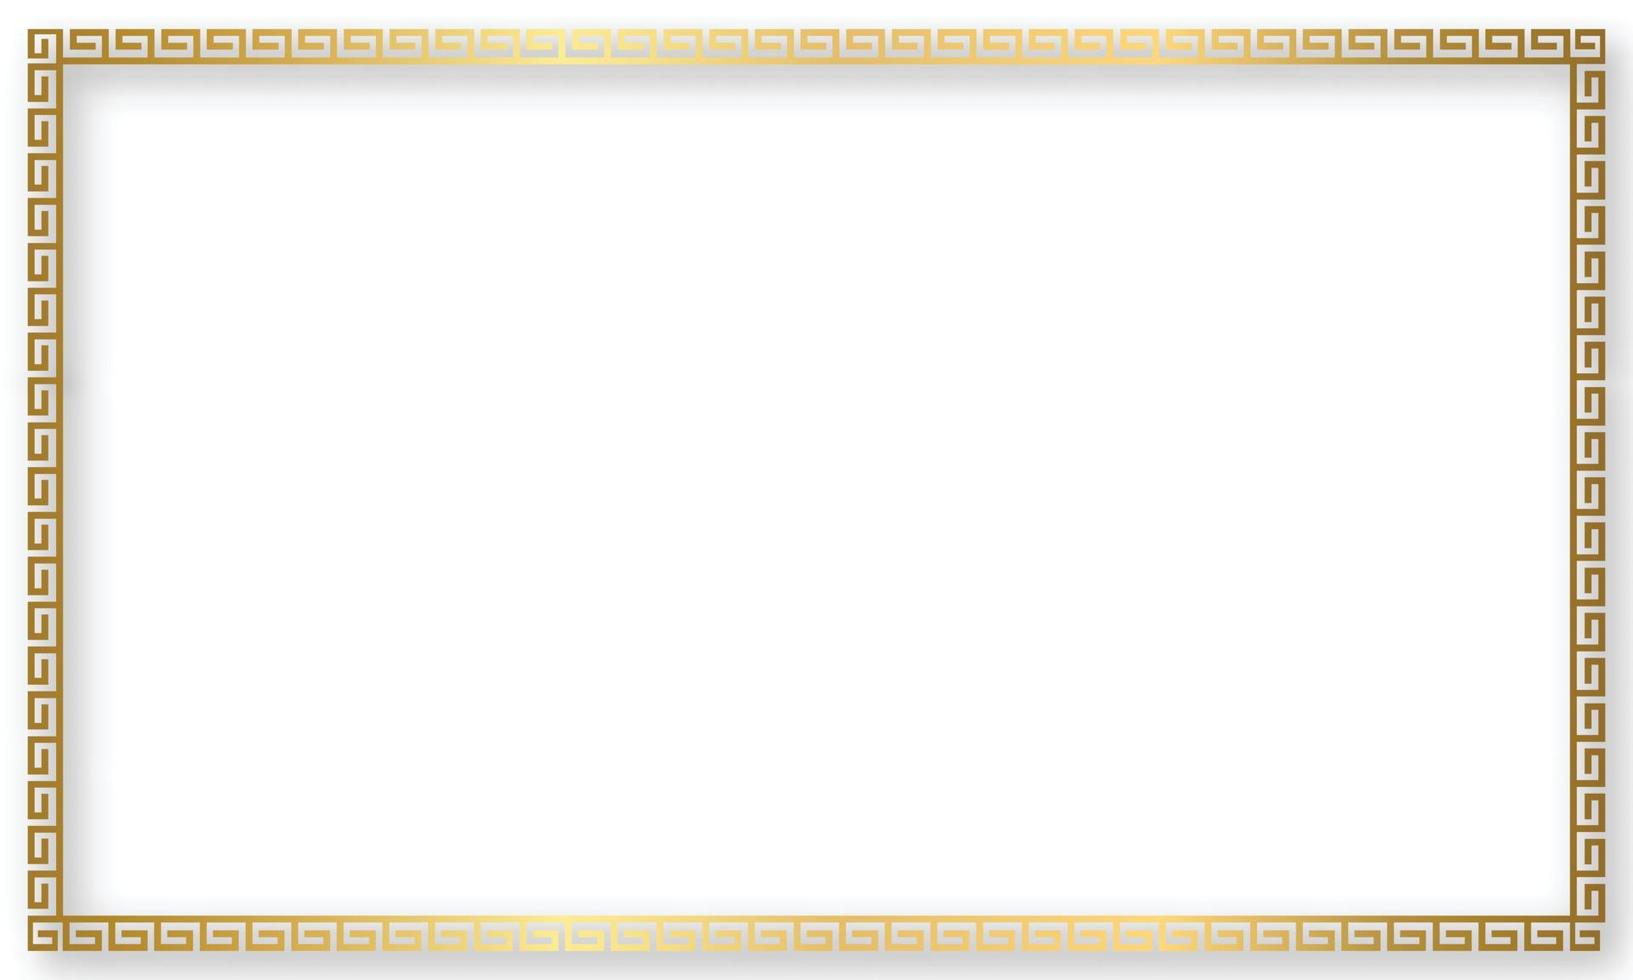 cornice in oro greco. bordo a meandro quadrato da un motivo ripetuto - tasto greco o design a chiave. illustrazione vettoriale. vettore